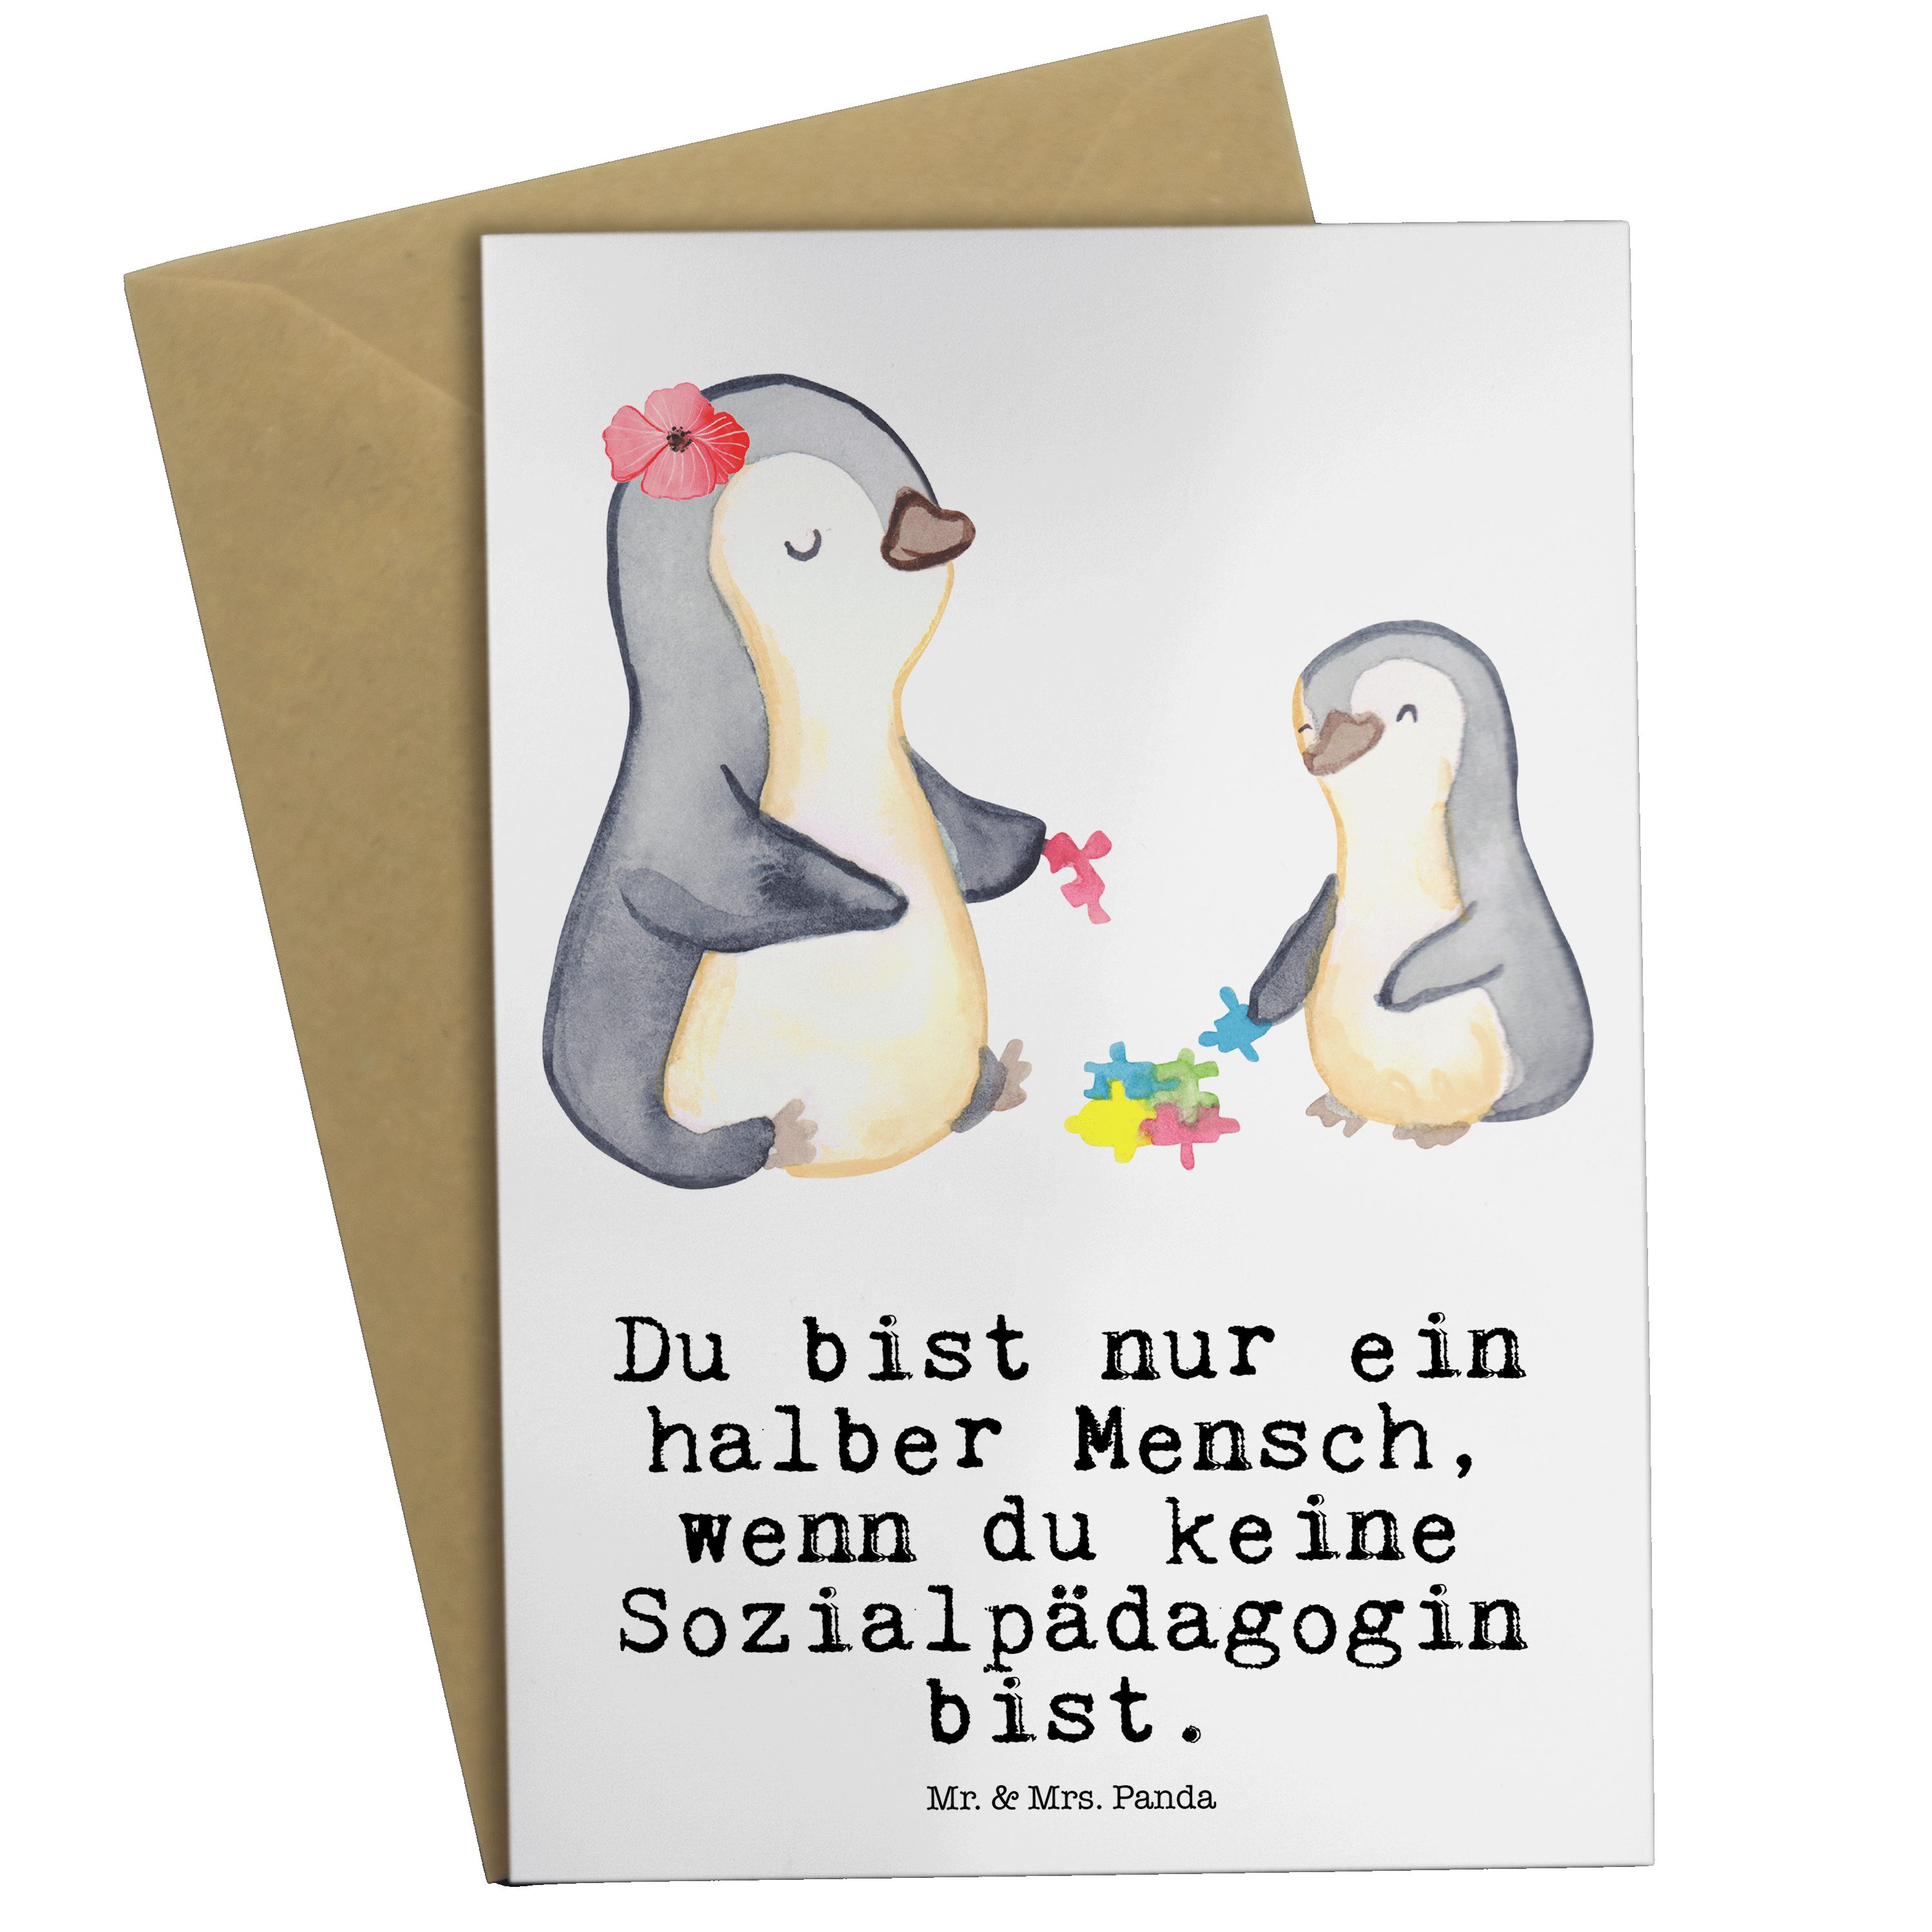 Mr. & Mrs. Panda Grußkarte Sozialpädagogin mit Herz - Weiß - Geschenk, Klappkarte, Einladungskar